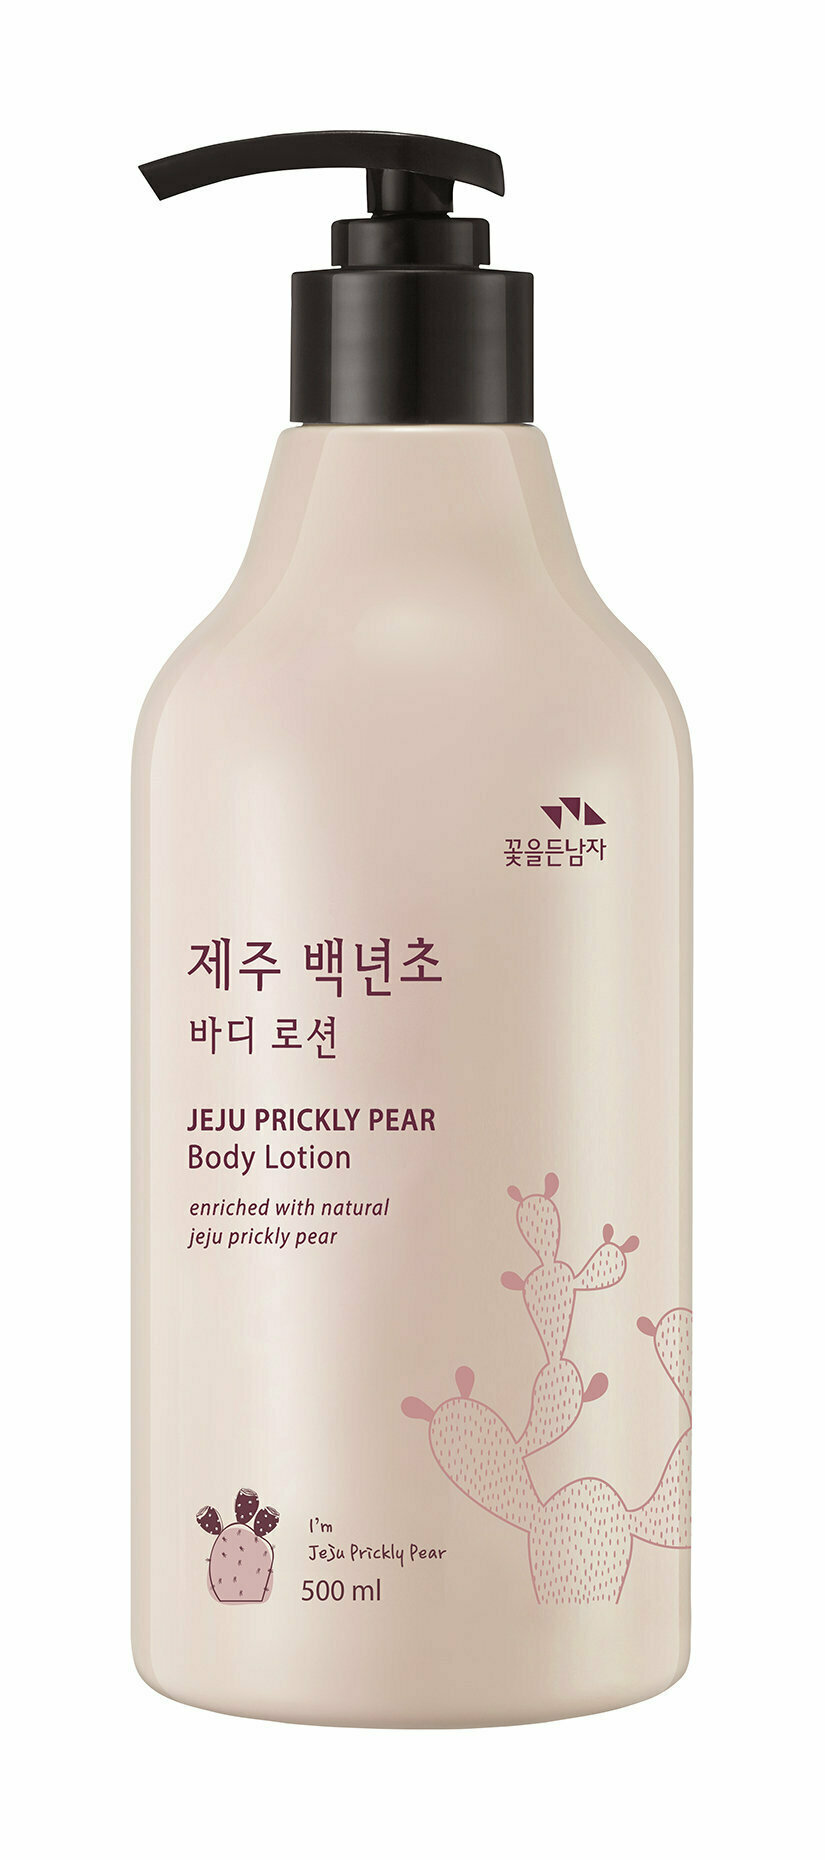 Лосьон для тела с экстрактом колючей груши Flor de Man Jeju Prickly Pear Body Lotion